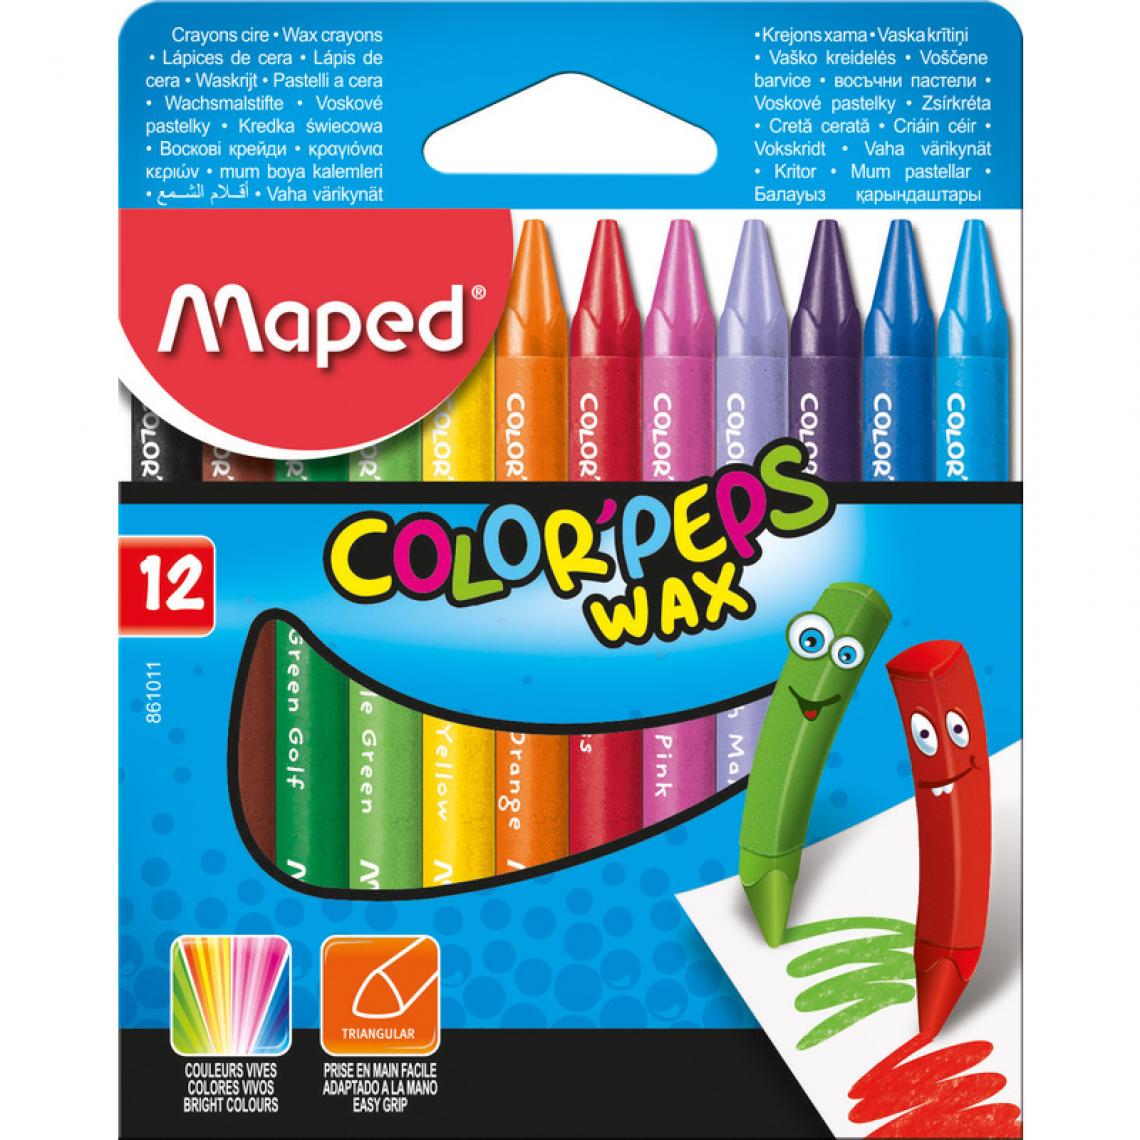 Maped - Maped Crayon de cire COLOR'PEPS WAX, étui en carton de 12 () - Outils et accessoires du peintre